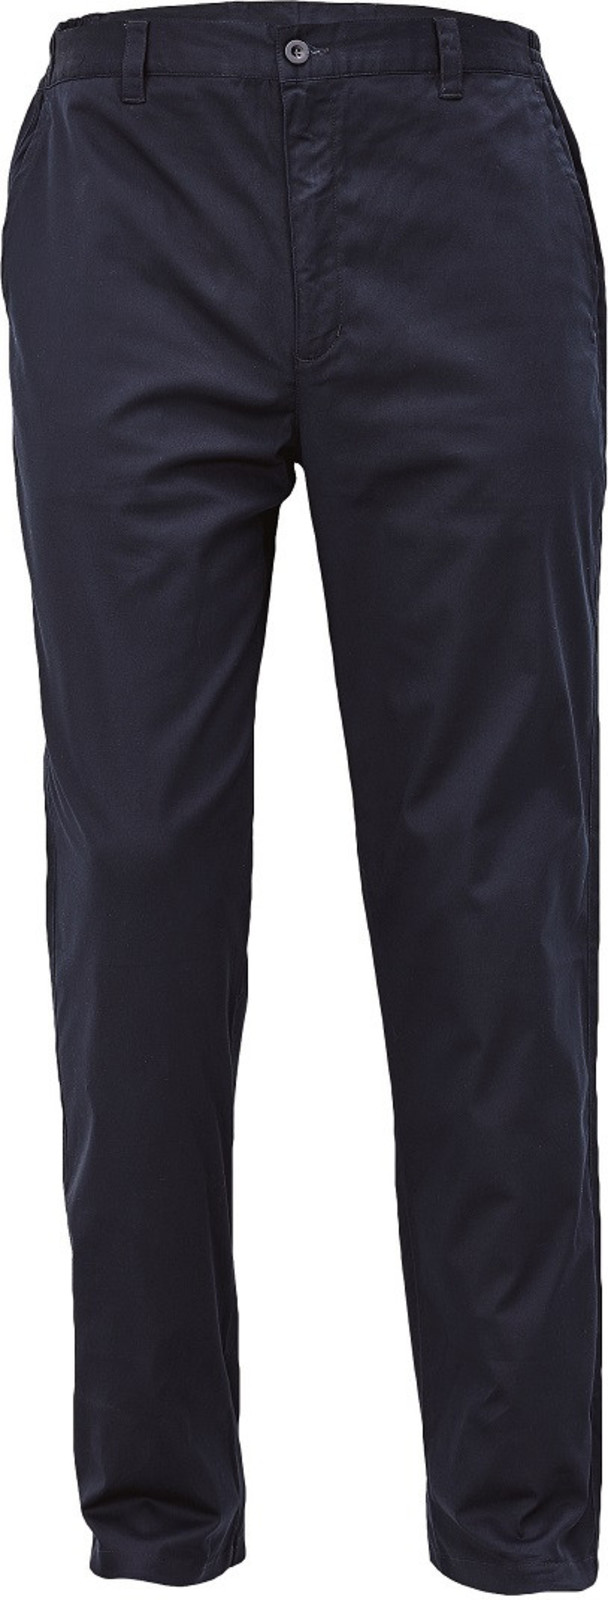 Voľnočasové nohavice Lagan pánske - veľkosť: 46, farba: navy